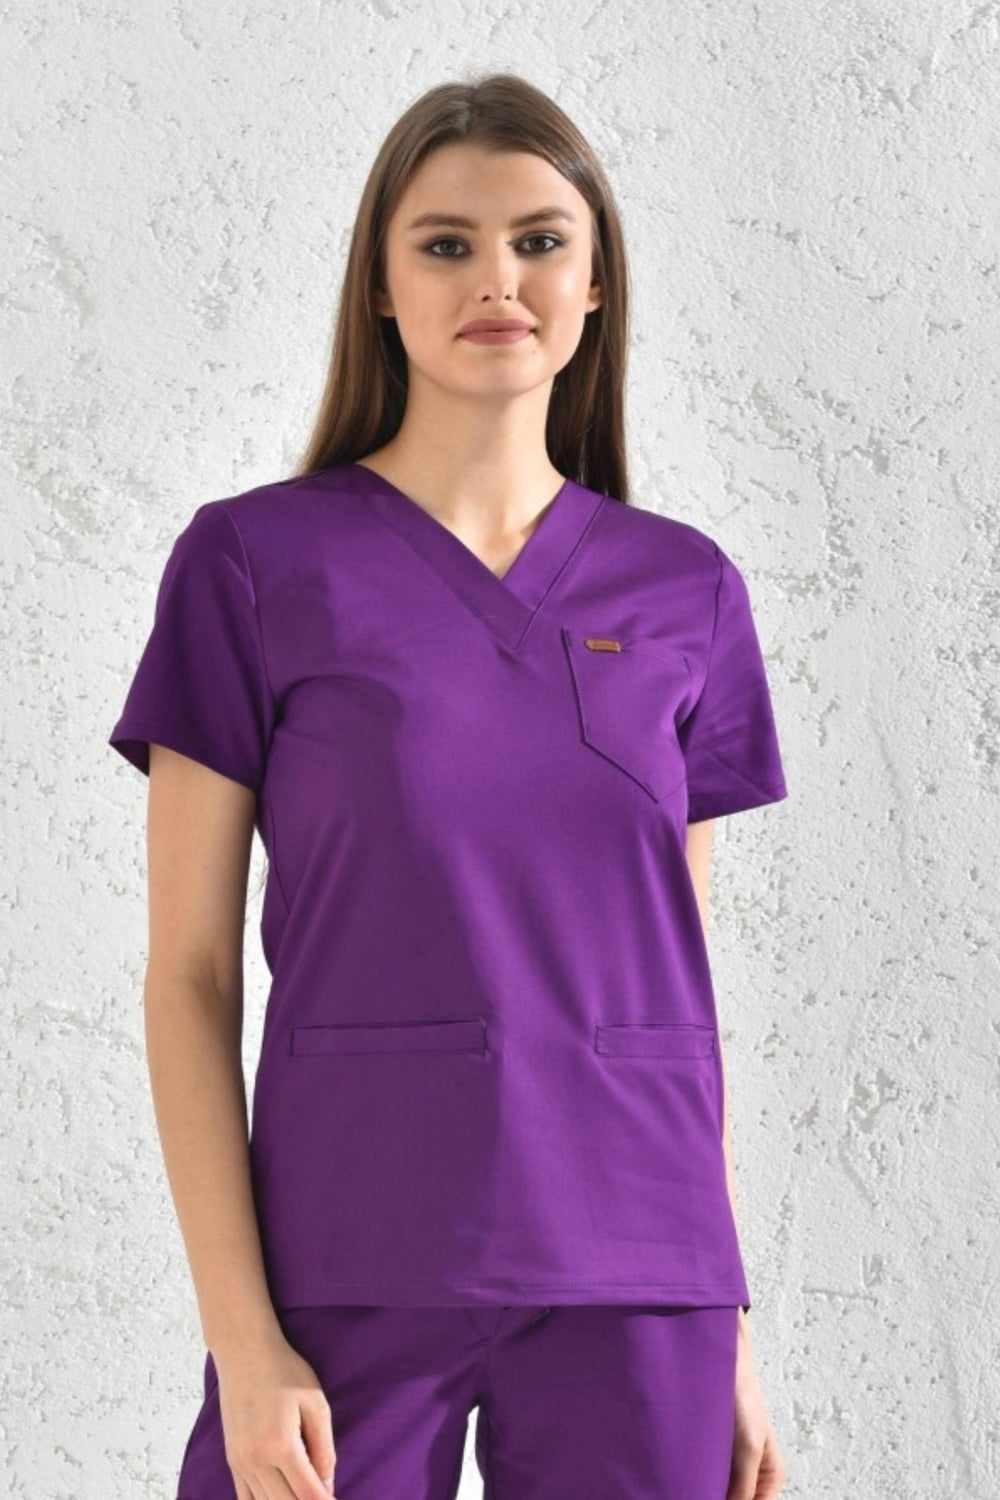 Femme en tunique médicale violette Slimfit NEW, tenue médicale élégante et confortable